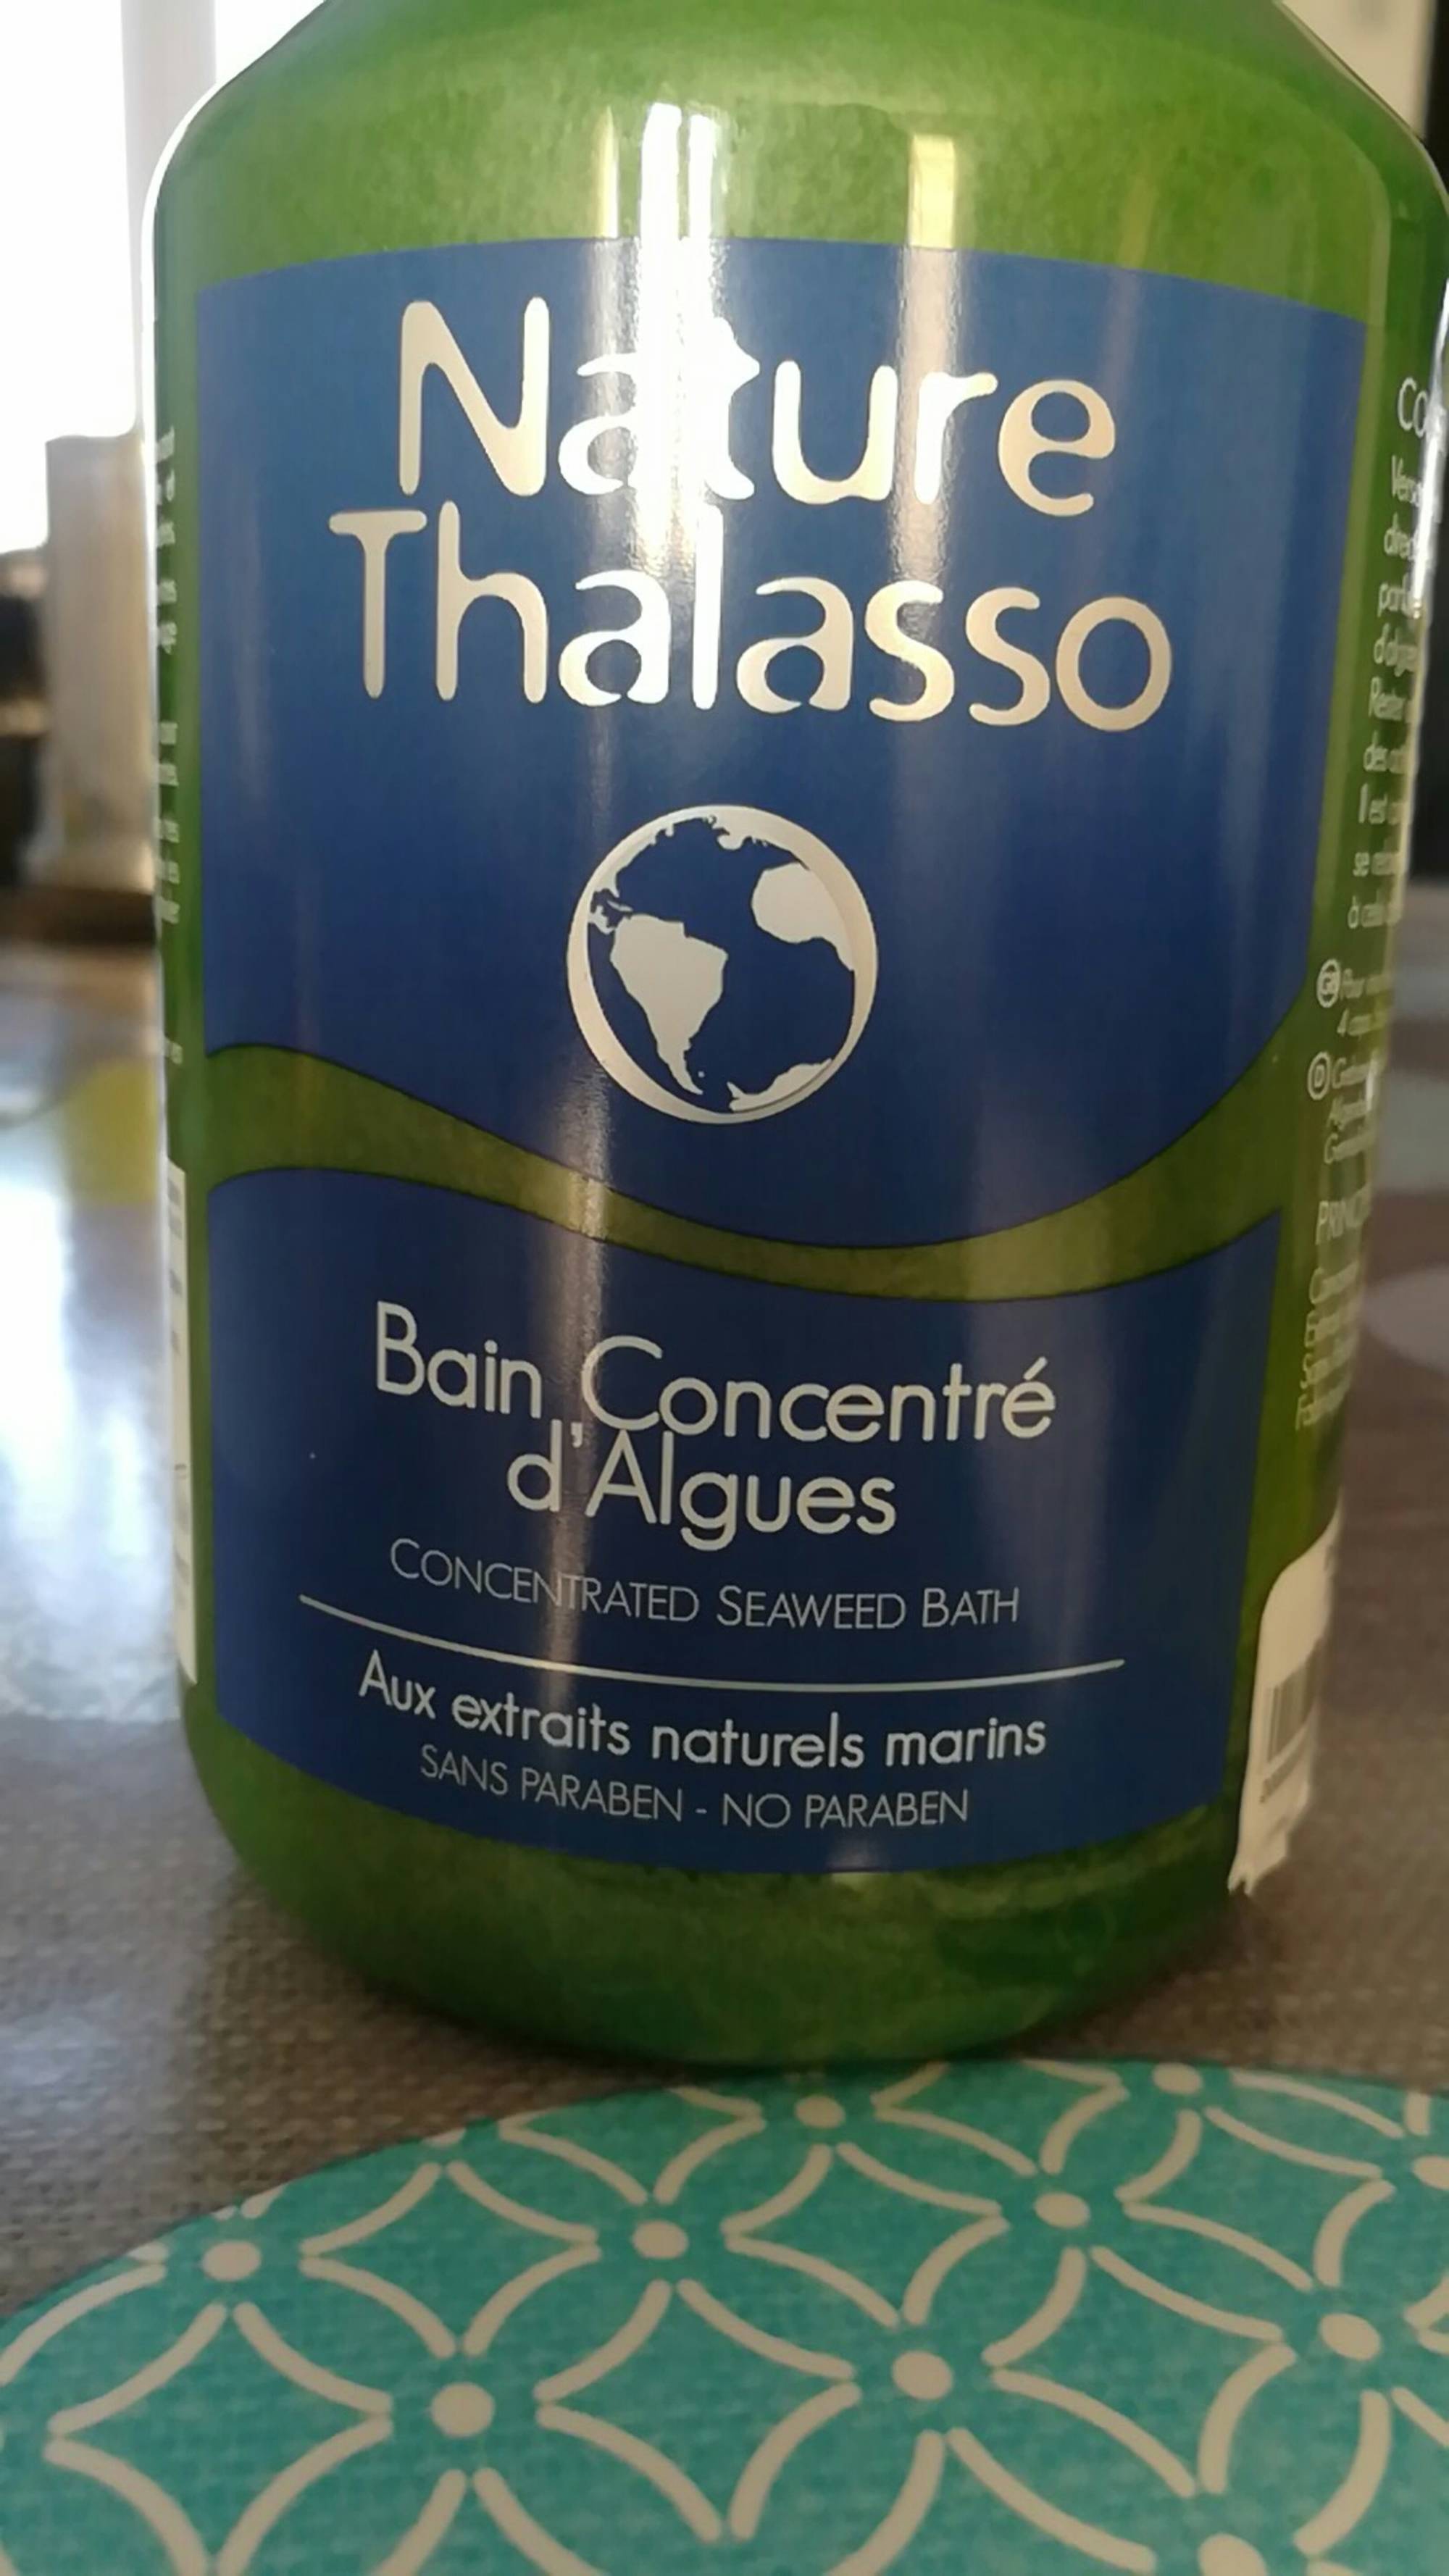 NATURE THALASSO - Bain concentré d'algues